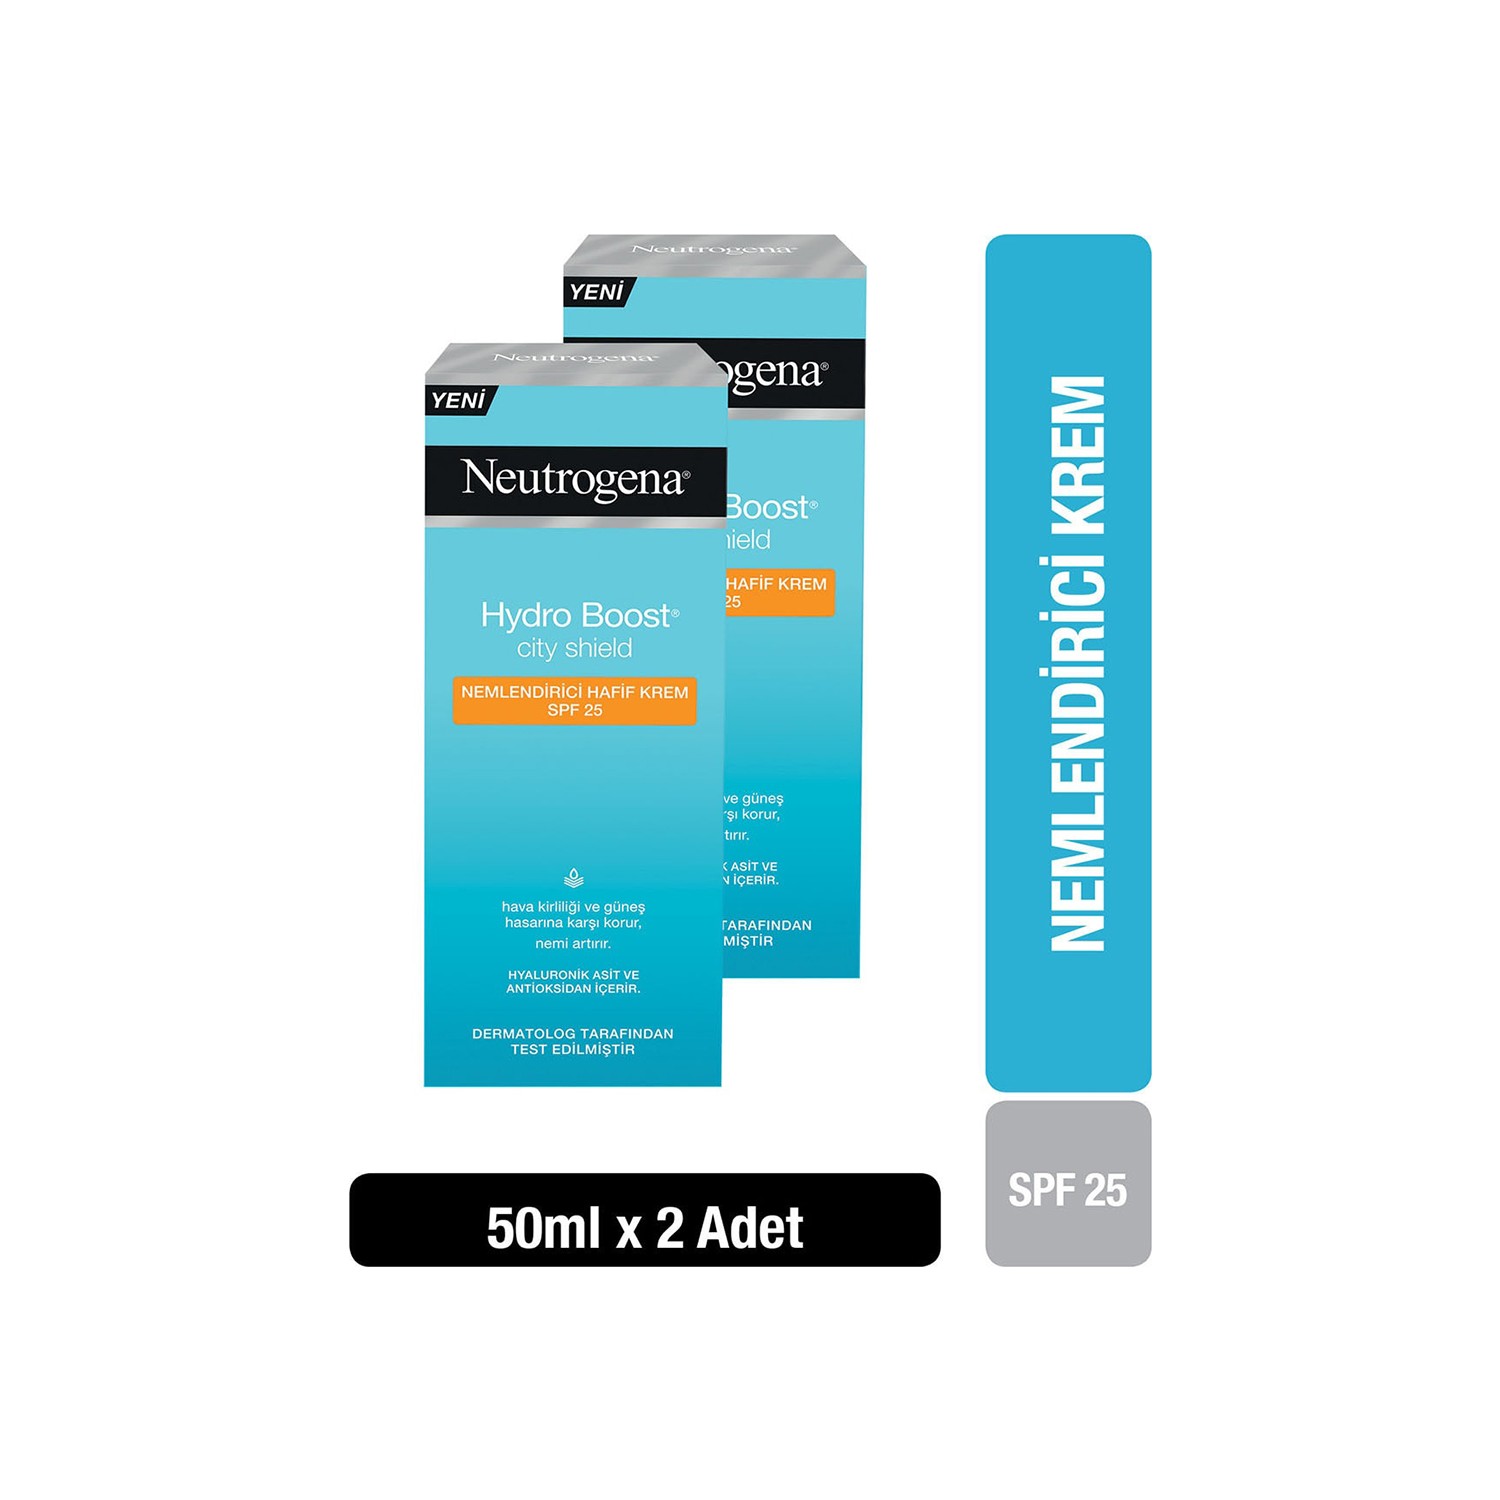 Крем Neutrogena Hydro Boost SPF25 увлажняющий, 2 упаковки по 50 мл крем neutrogena hydro boost spf25 увлажняющий 2 упаковки по 50 мл